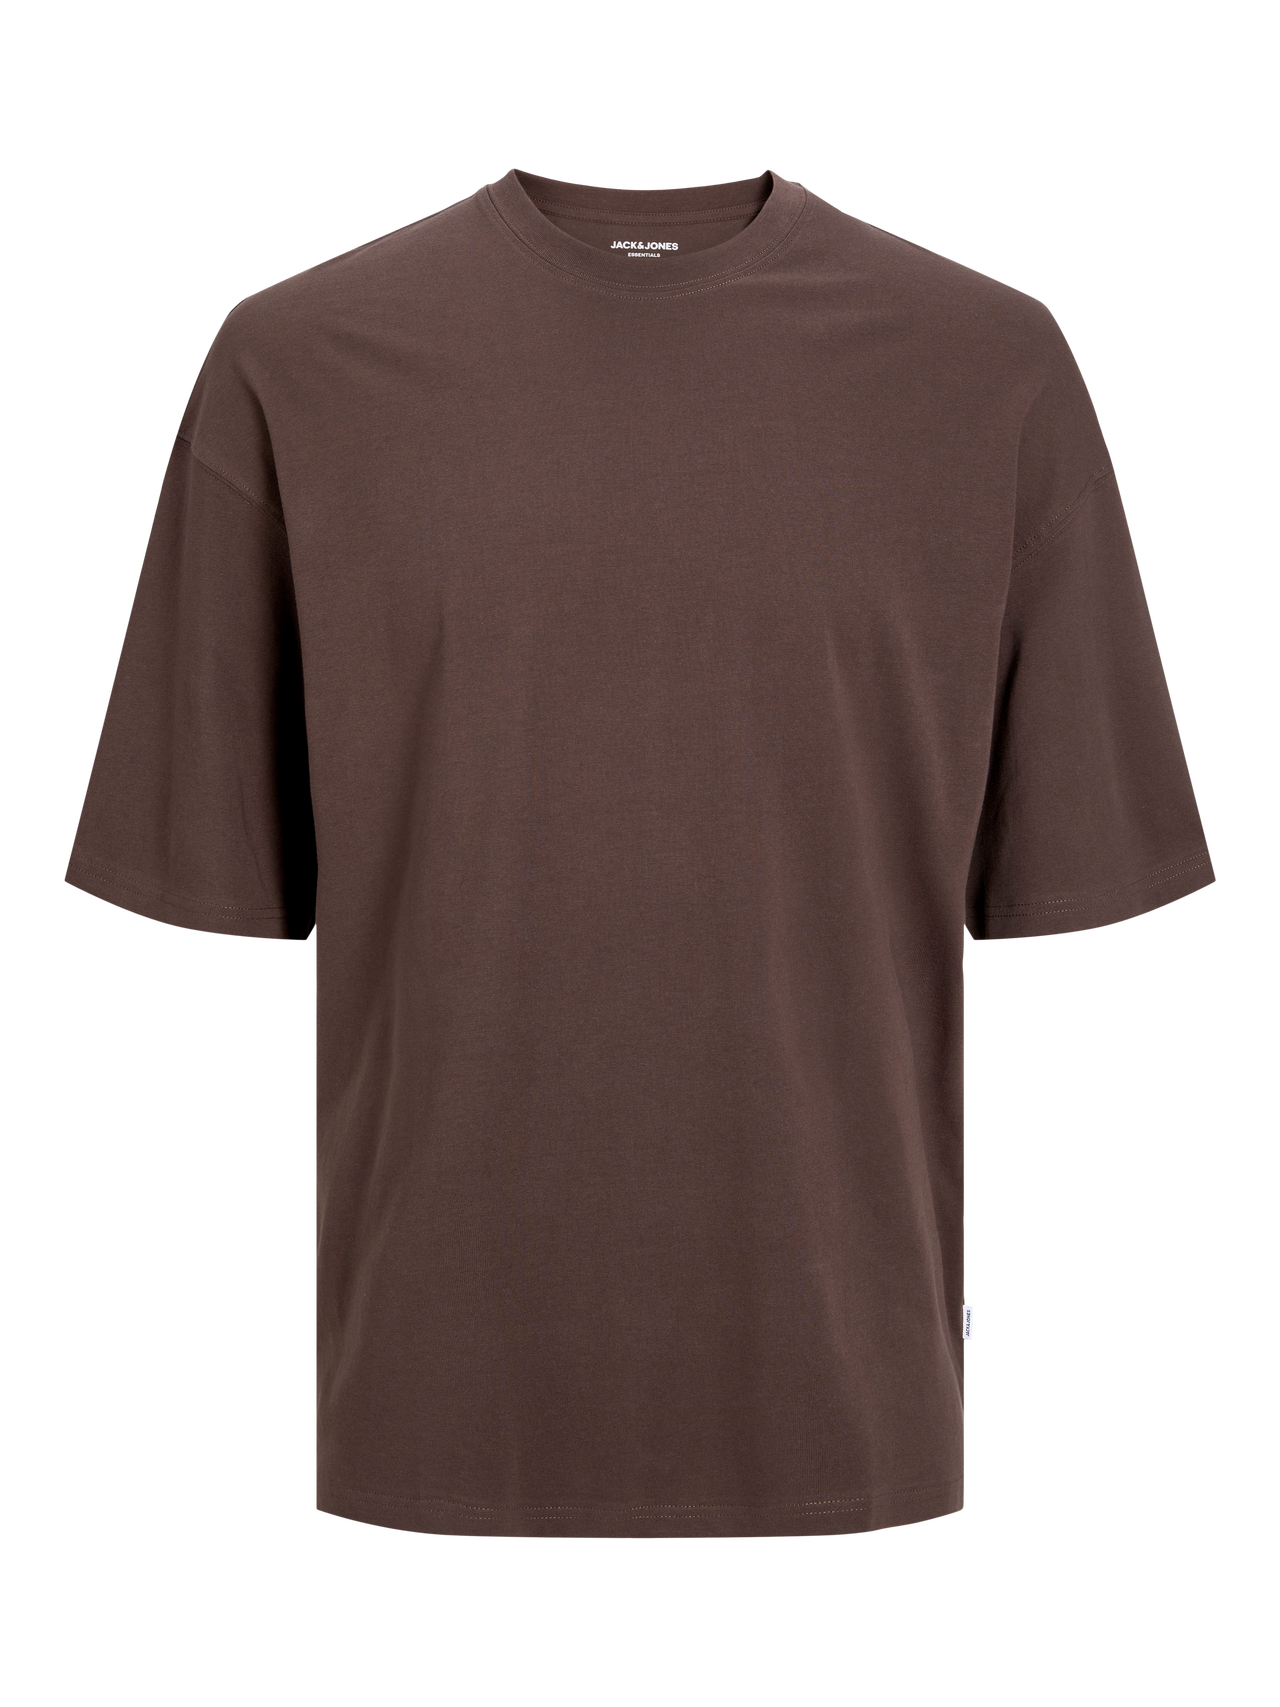 Jack & Jones Yksivärinen Pyöreä pääntie T-paita -Mulch - 12259975